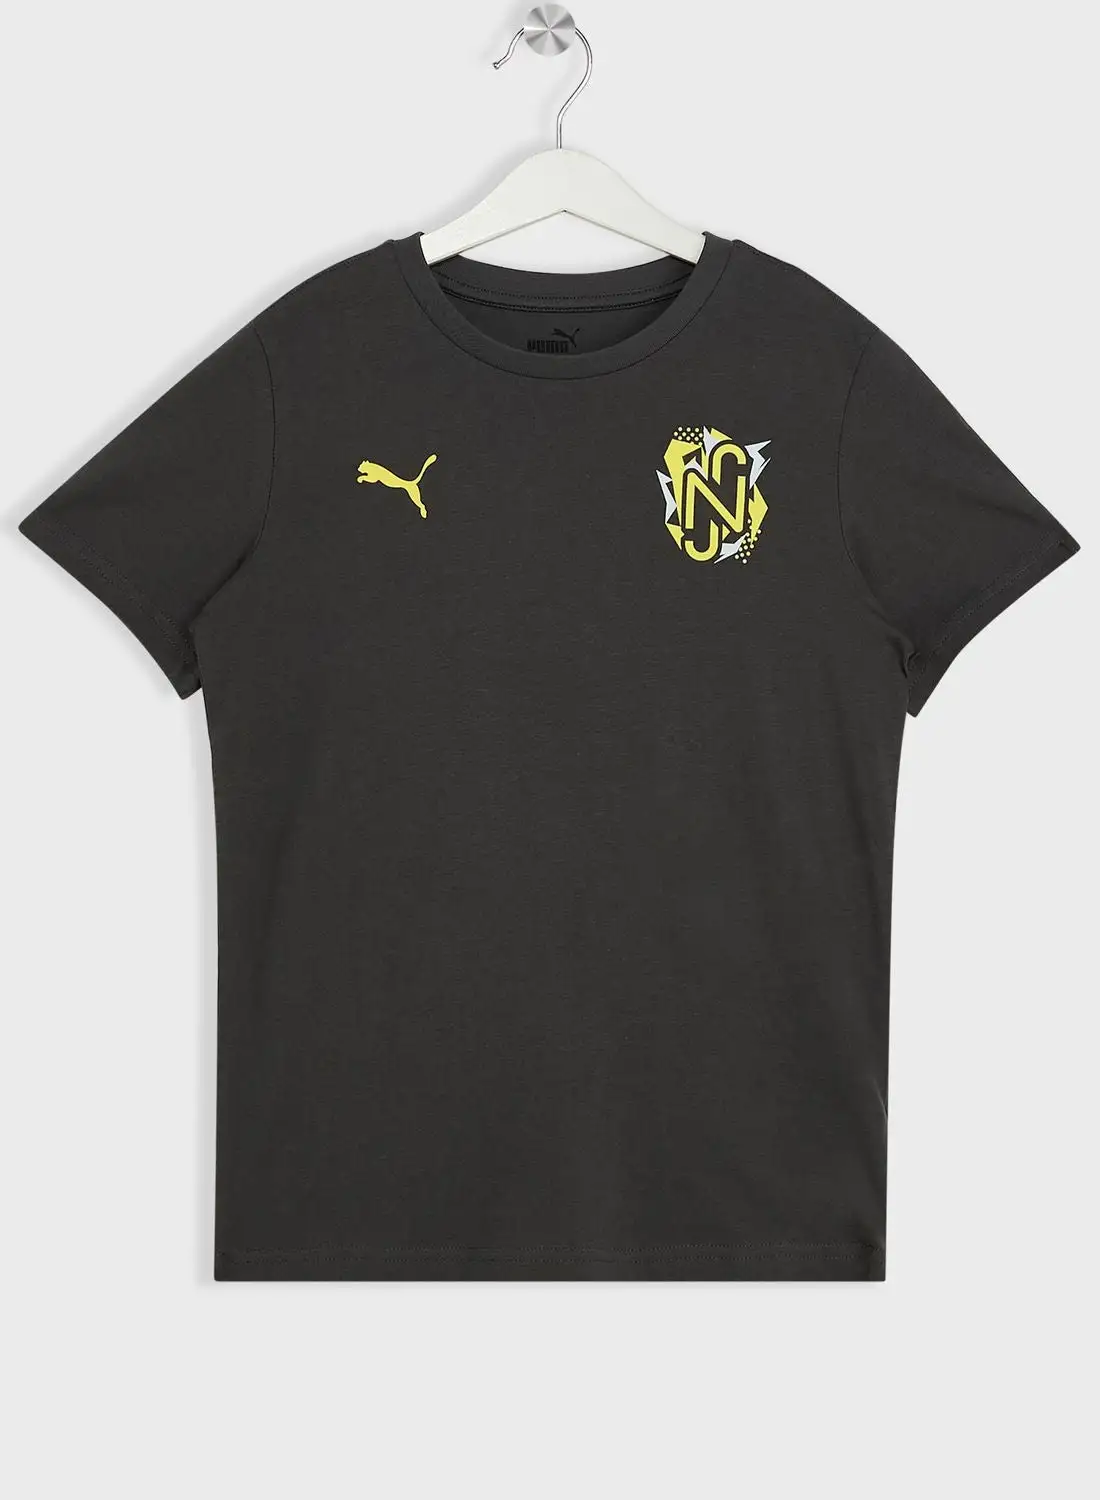 PUMA Kids Neymar Jr Voltage Jersey T-Shirt